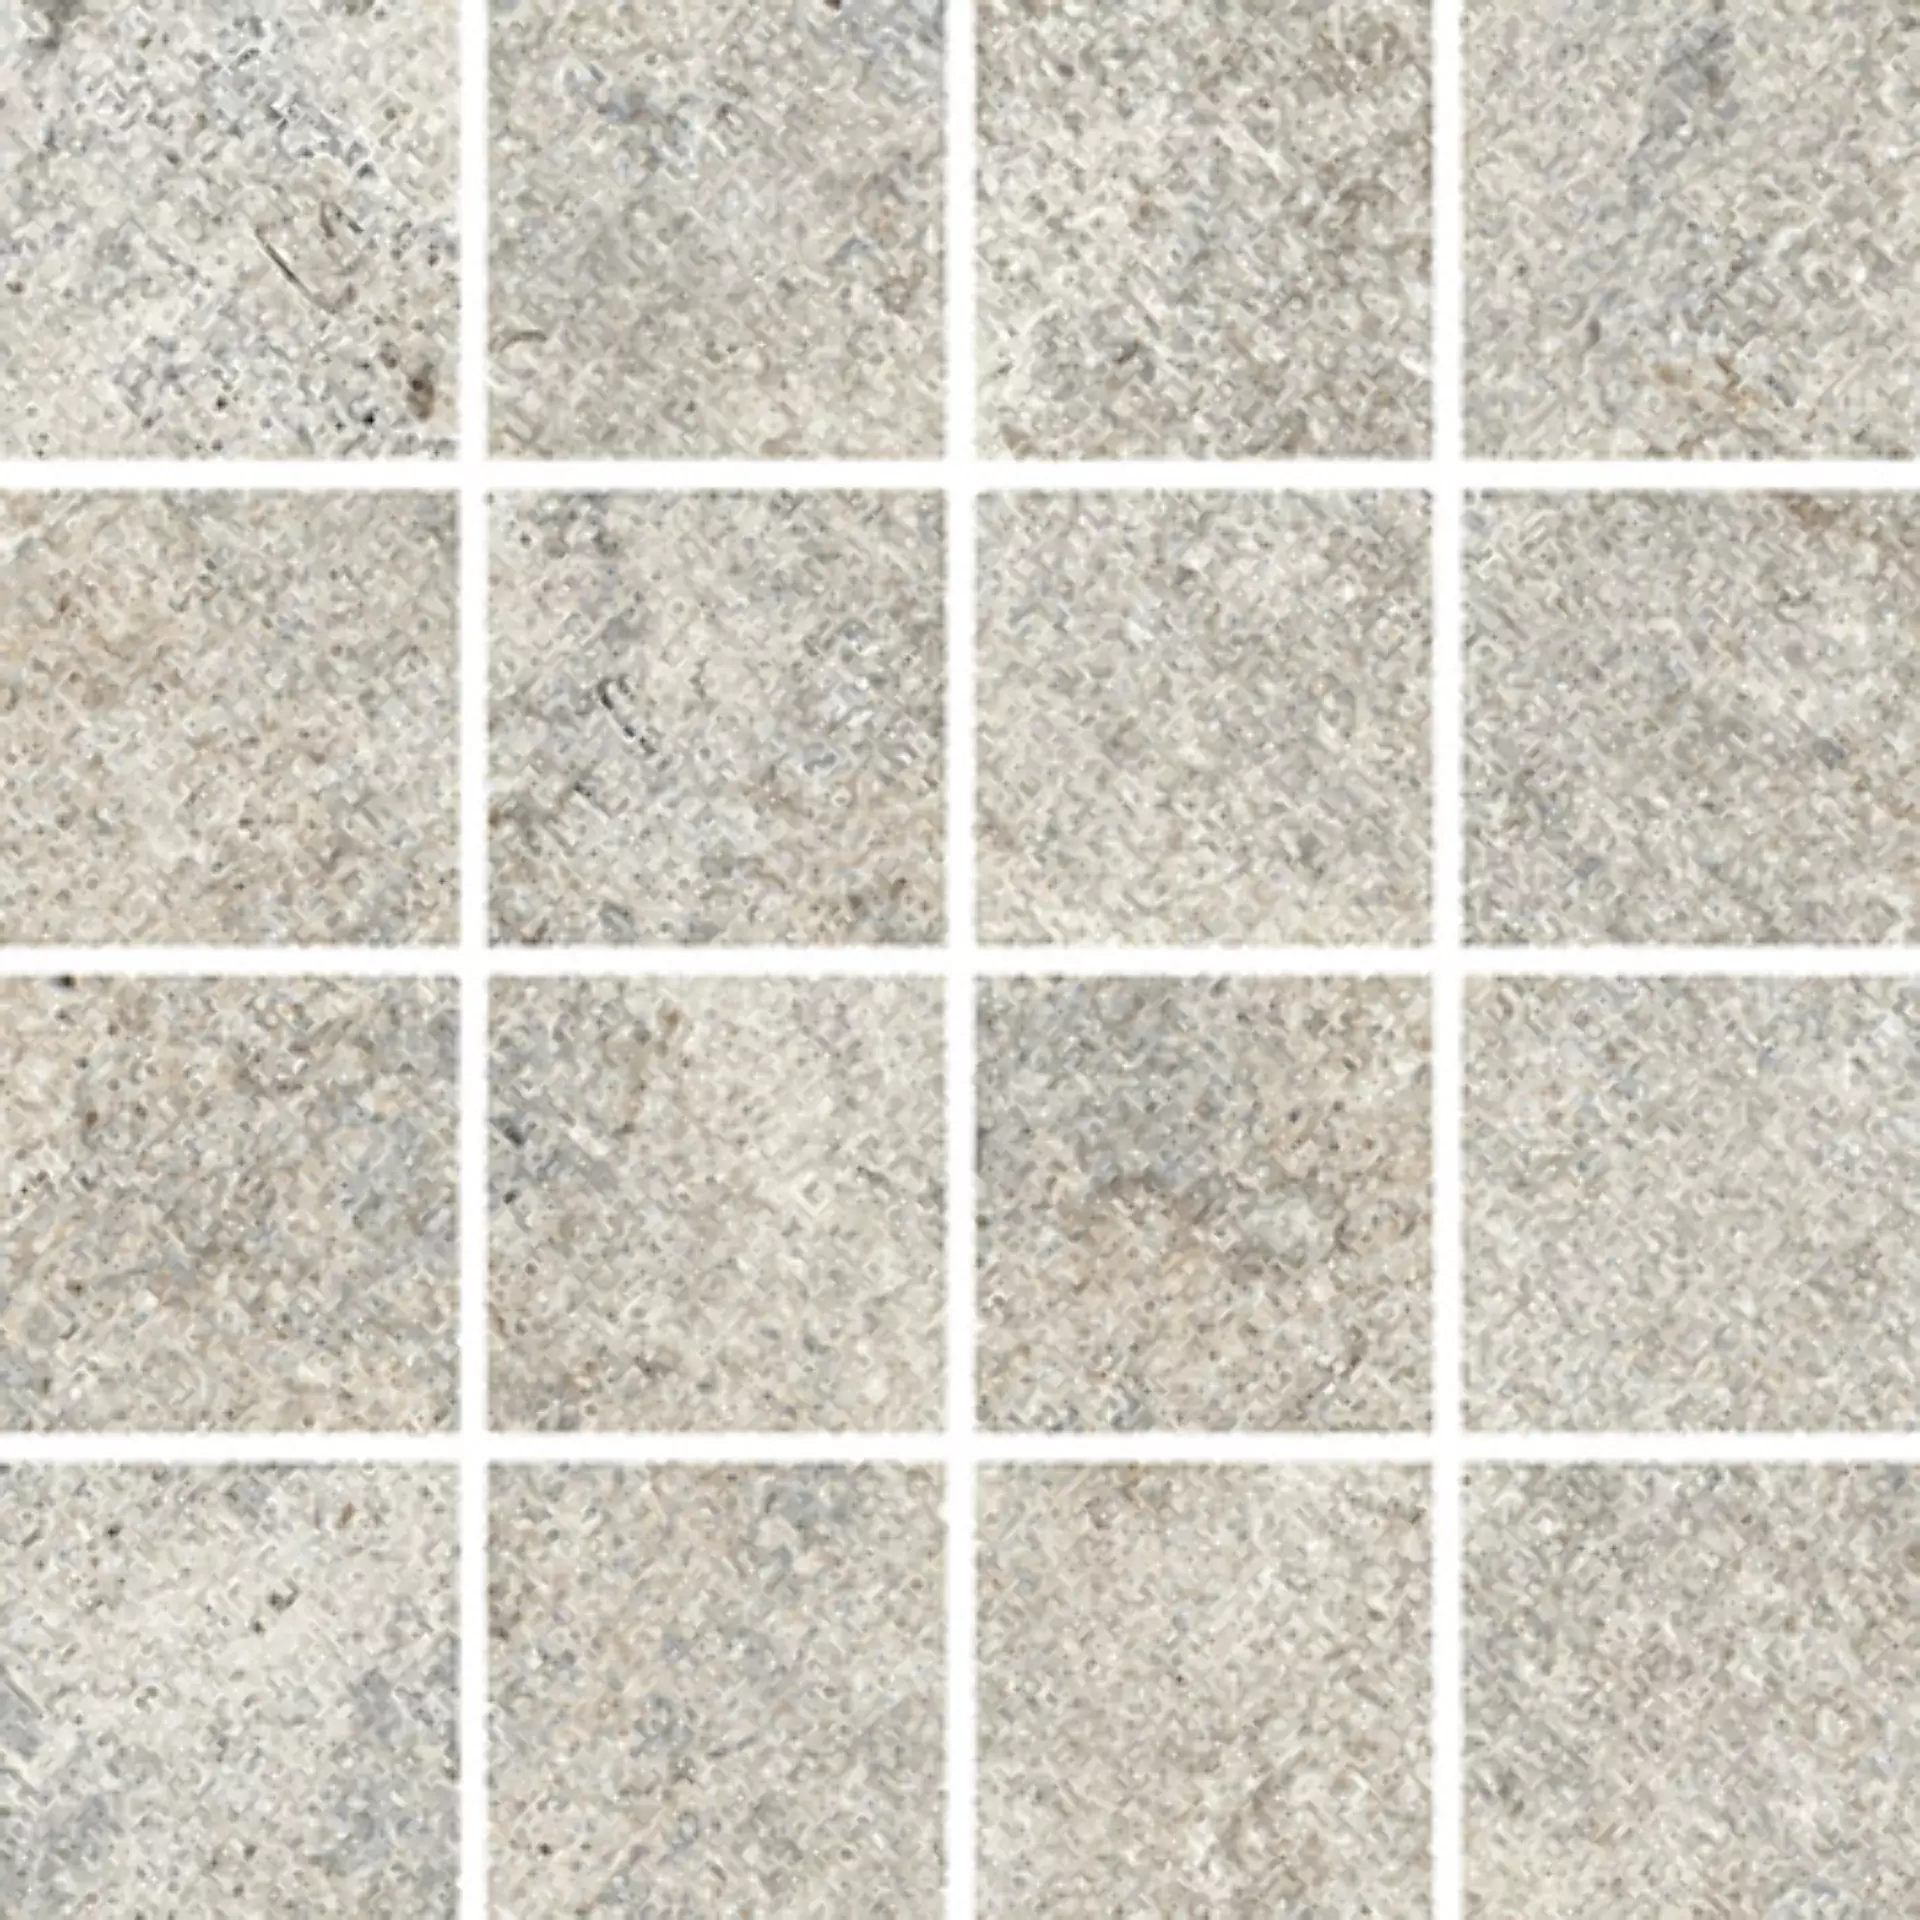 Wandfliese,Bodenfliese Villeroy & Boch Bourgogna Grey Matt Grey 2013-DM60 matt 7,5x7,5cm Mosaik (7,5x7,5) rektifiziert 9mm